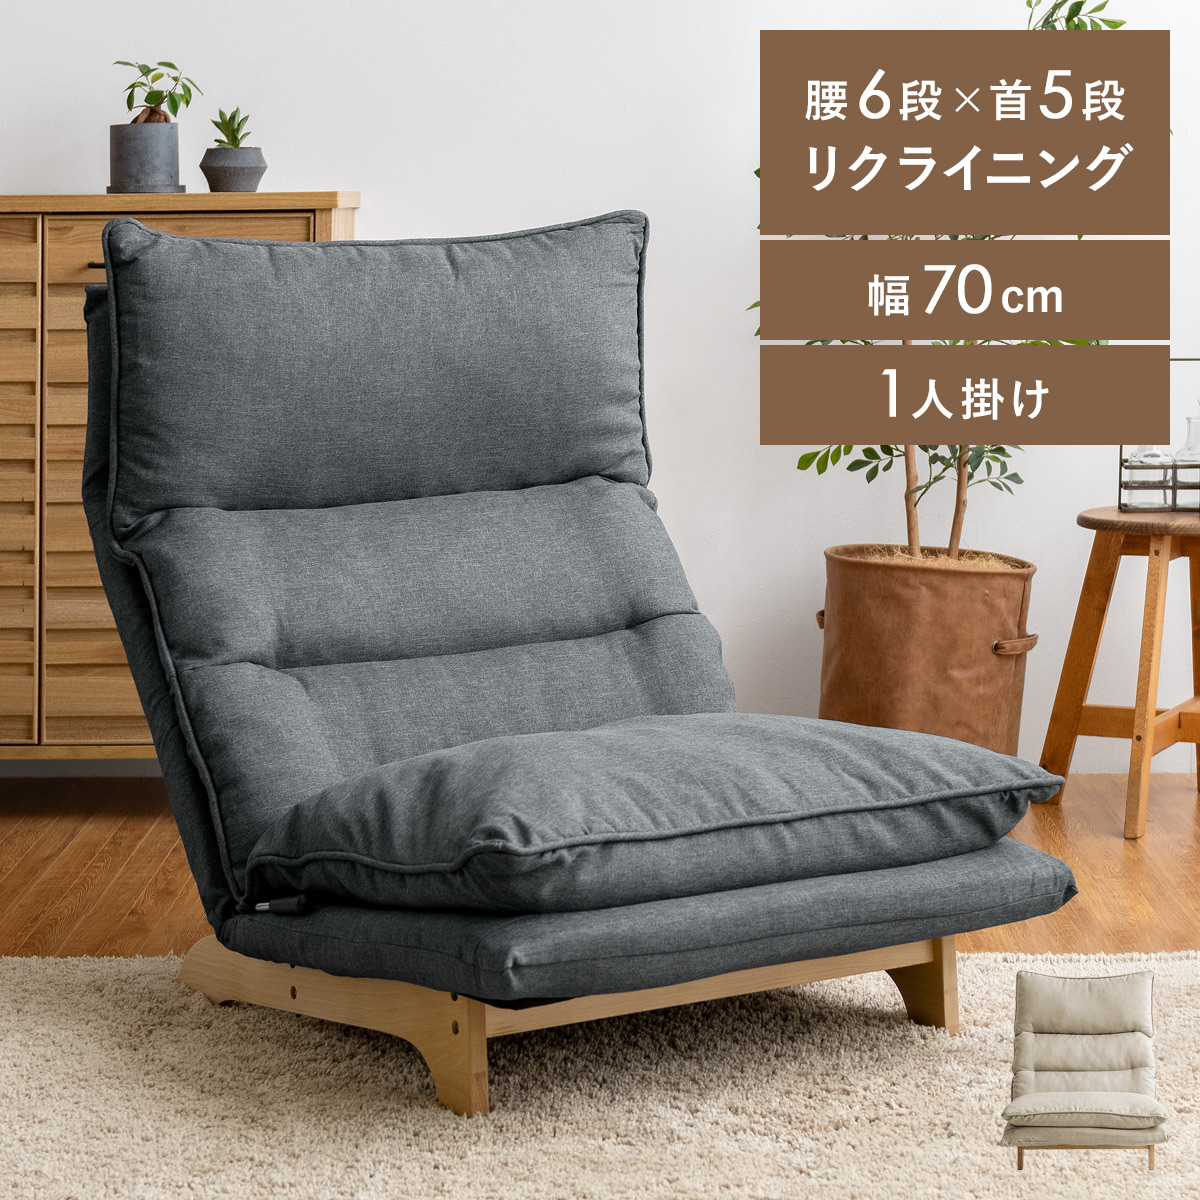 ダブルクッション座椅子 1人掛けタイプ 【公式】 エア・リゾーム インテリア・家具通販